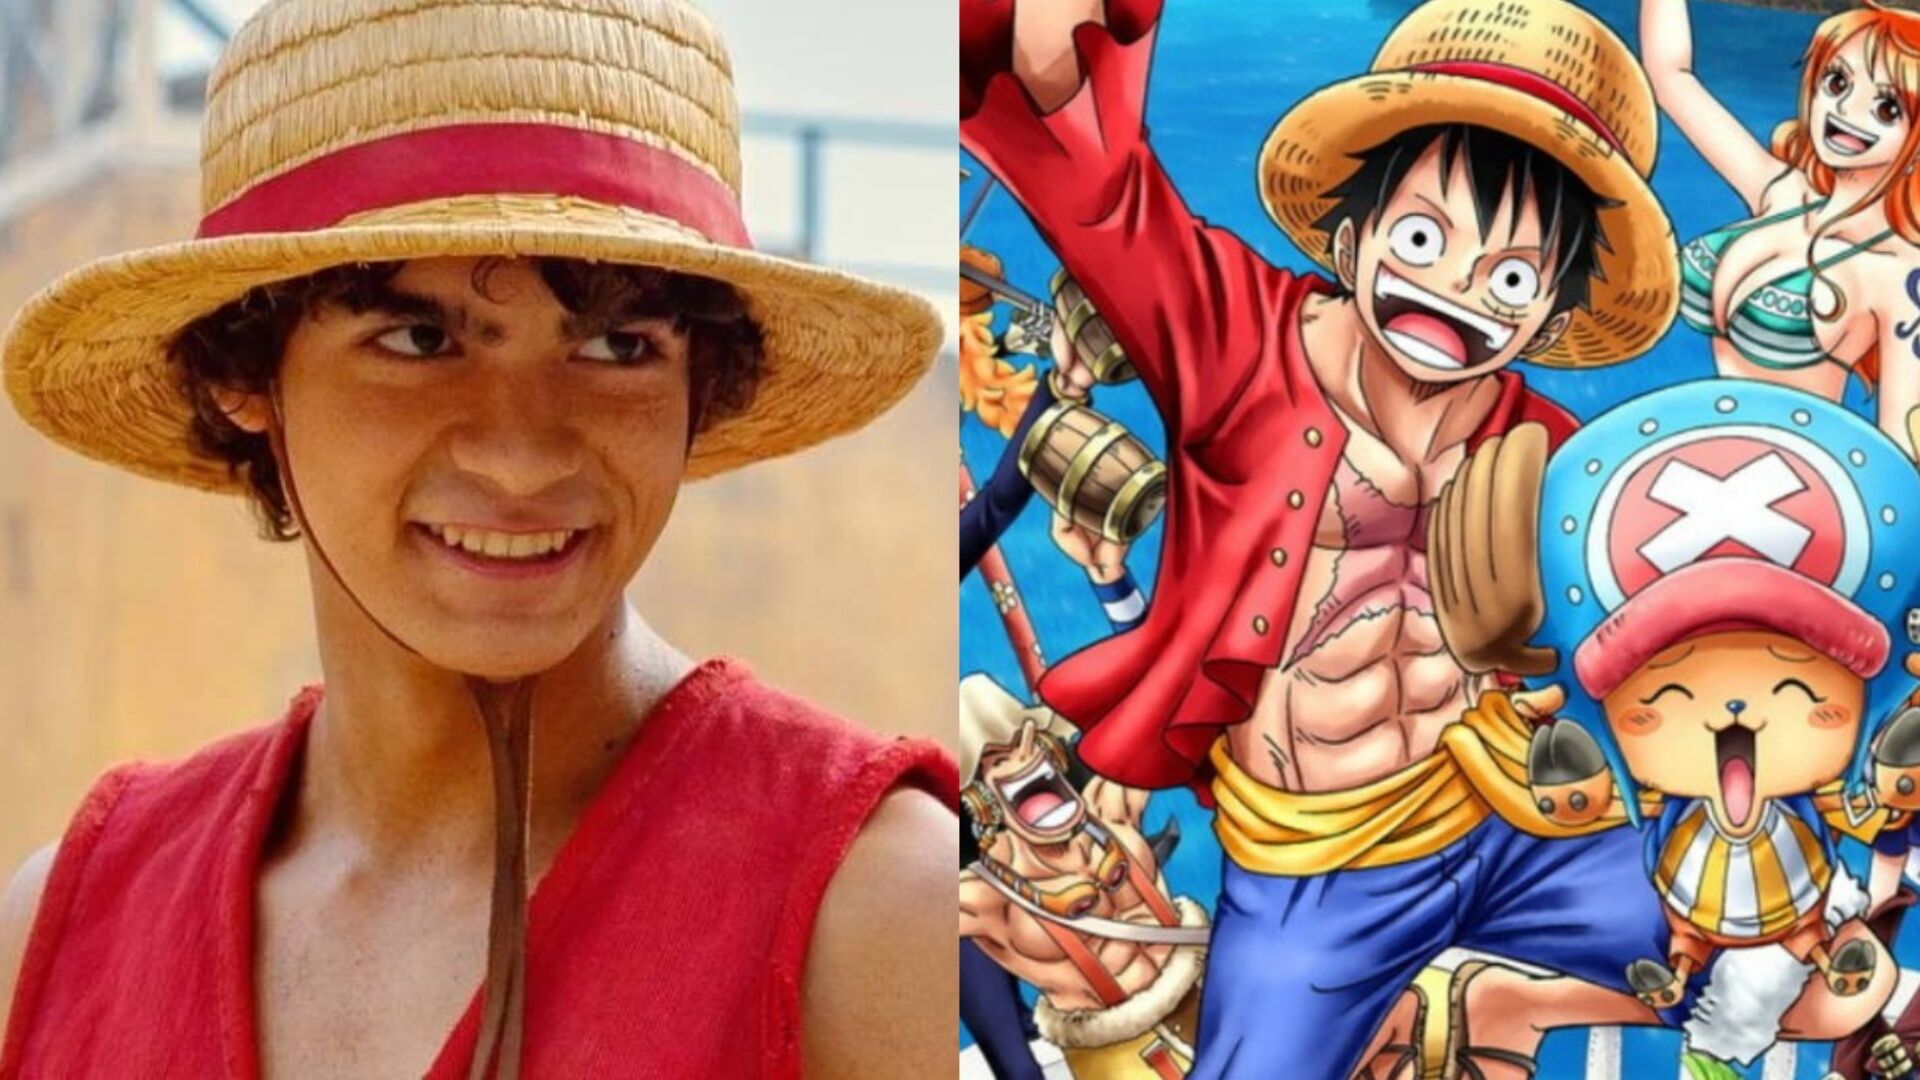 One Piece”: desde cuándo puedes ver la serie en Netflix y cuántos